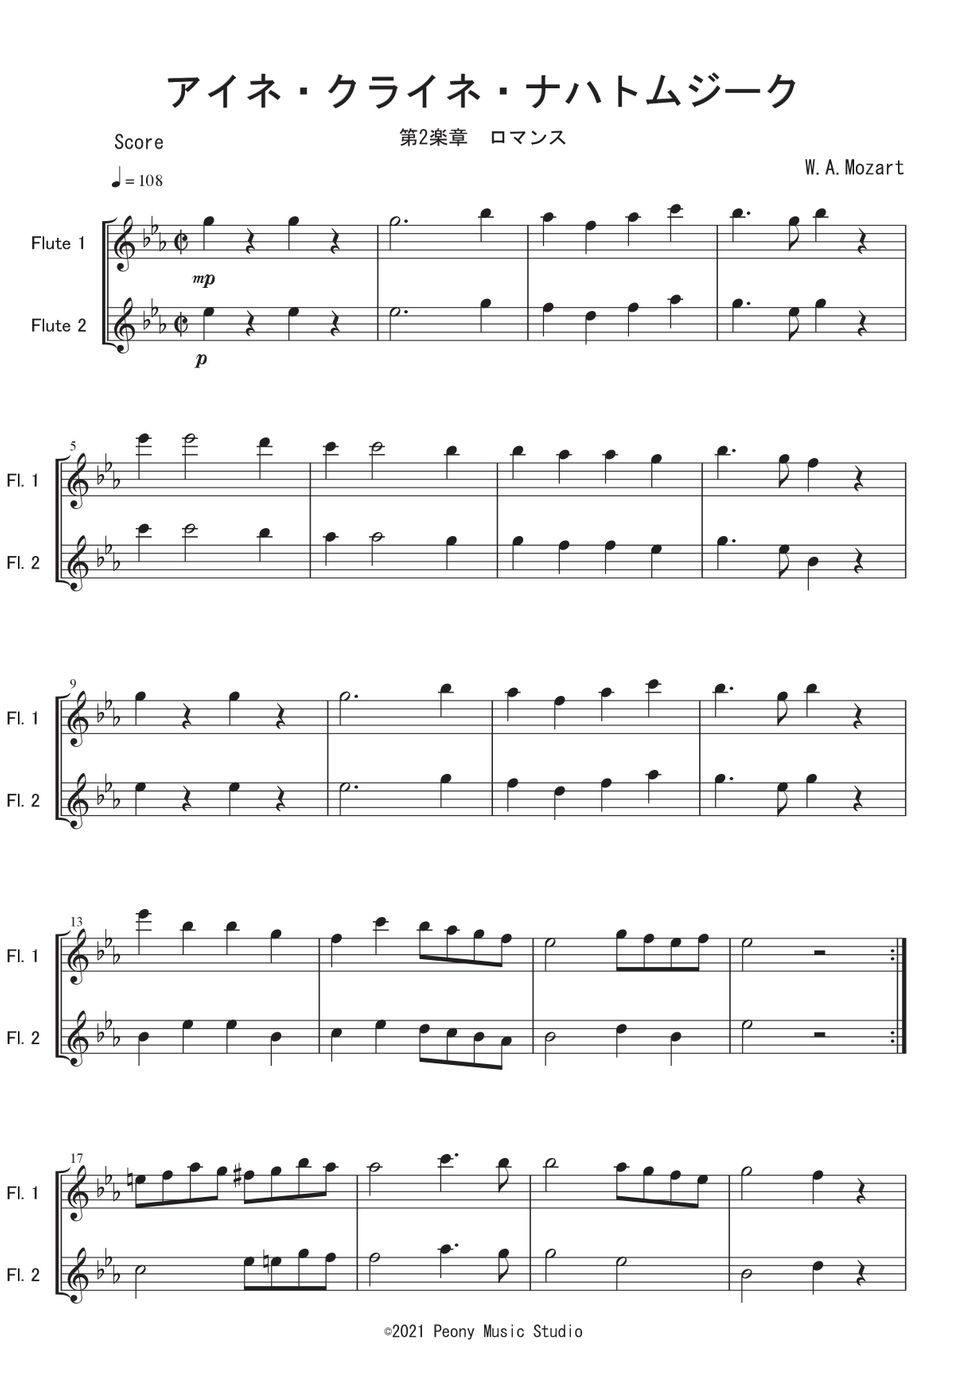 W.A.モーツァルト - 「アイネ・クライネ・ナハトムジーク」より ロマンス (Fl二重奏) by Peony